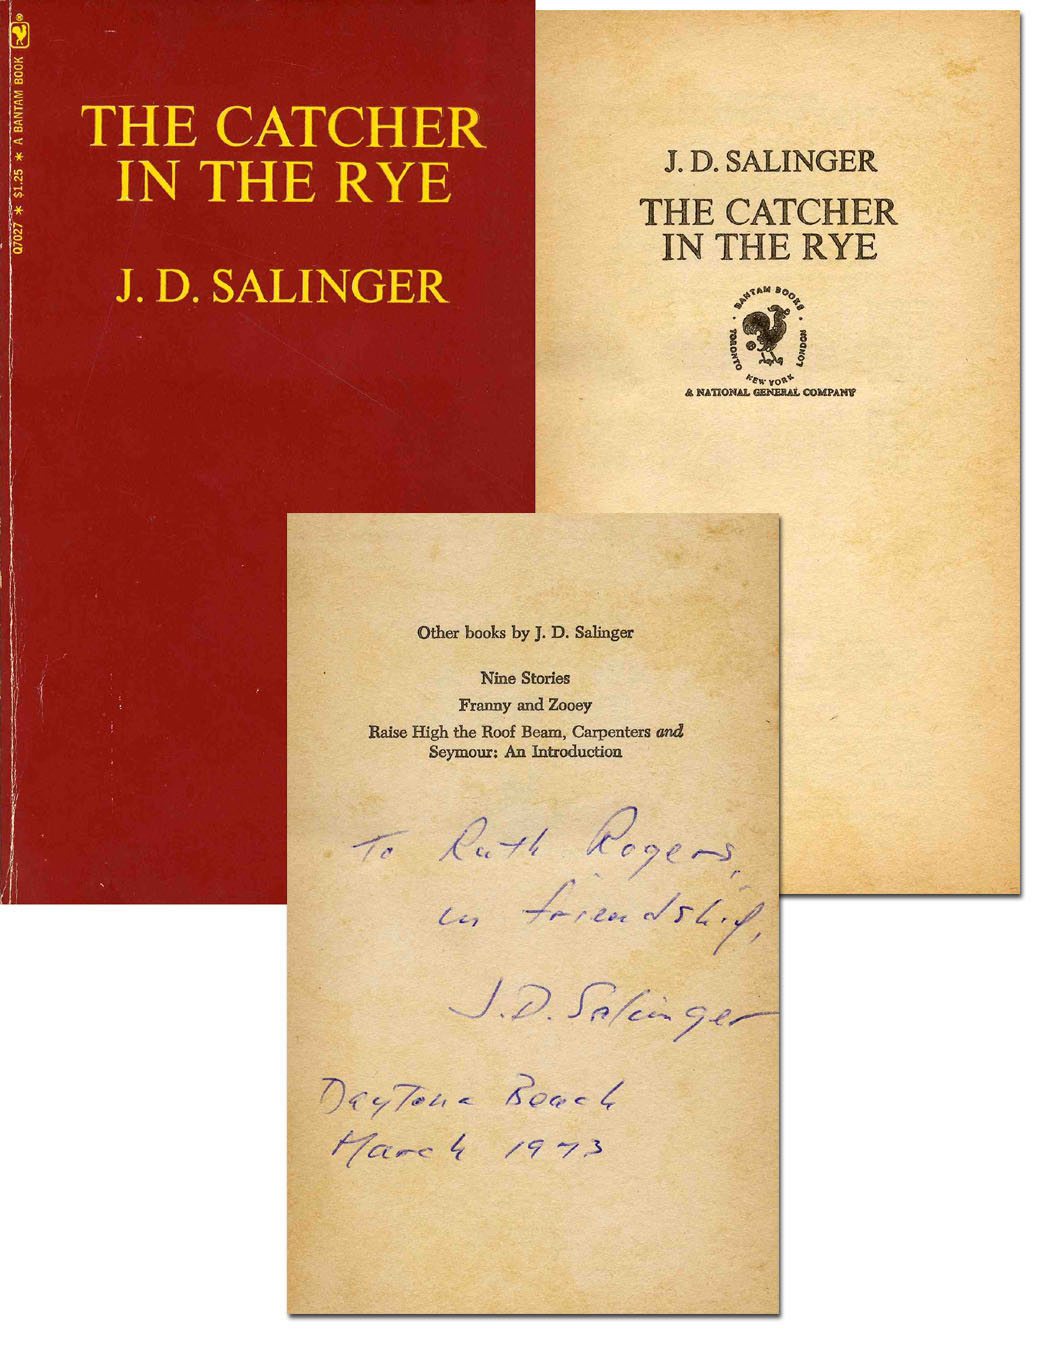 J.D. Salinger Autograph Letter Signed J.D. Salinger Signed "Catcher" J.D. Salinger Autograph